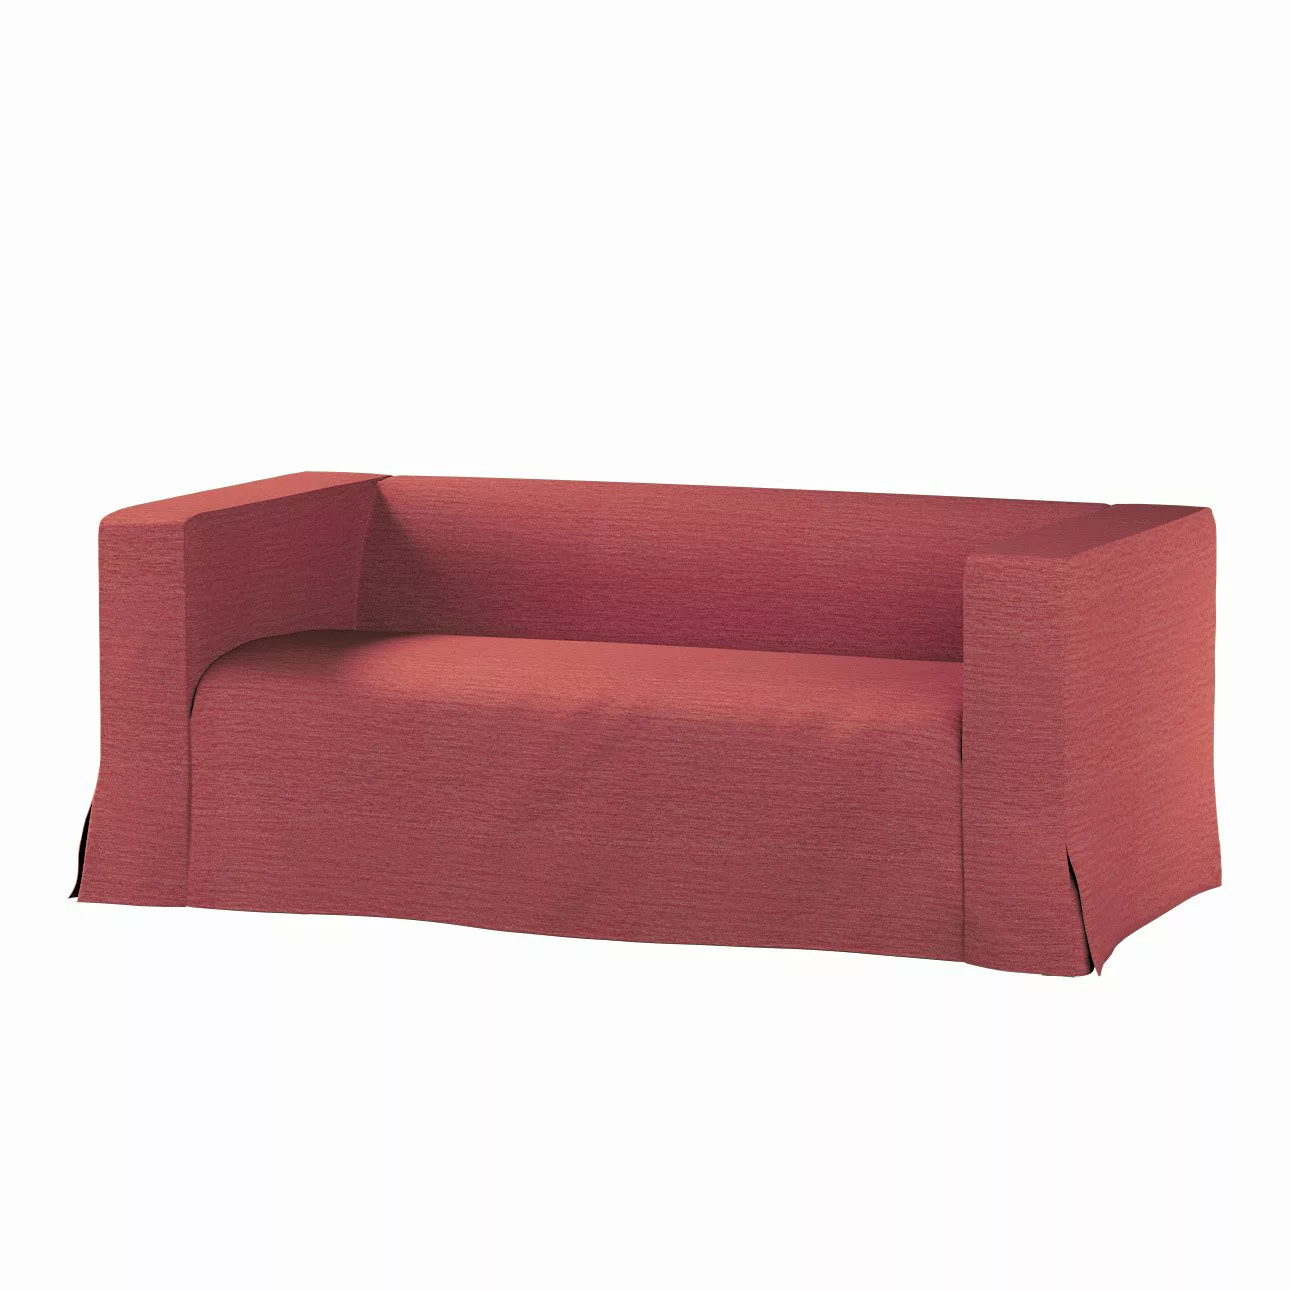 Bezug für Klippan 2-Sitzer Sofa, lang mit Kellerfalte, ziegelrot, Klippan 2 günstig online kaufen